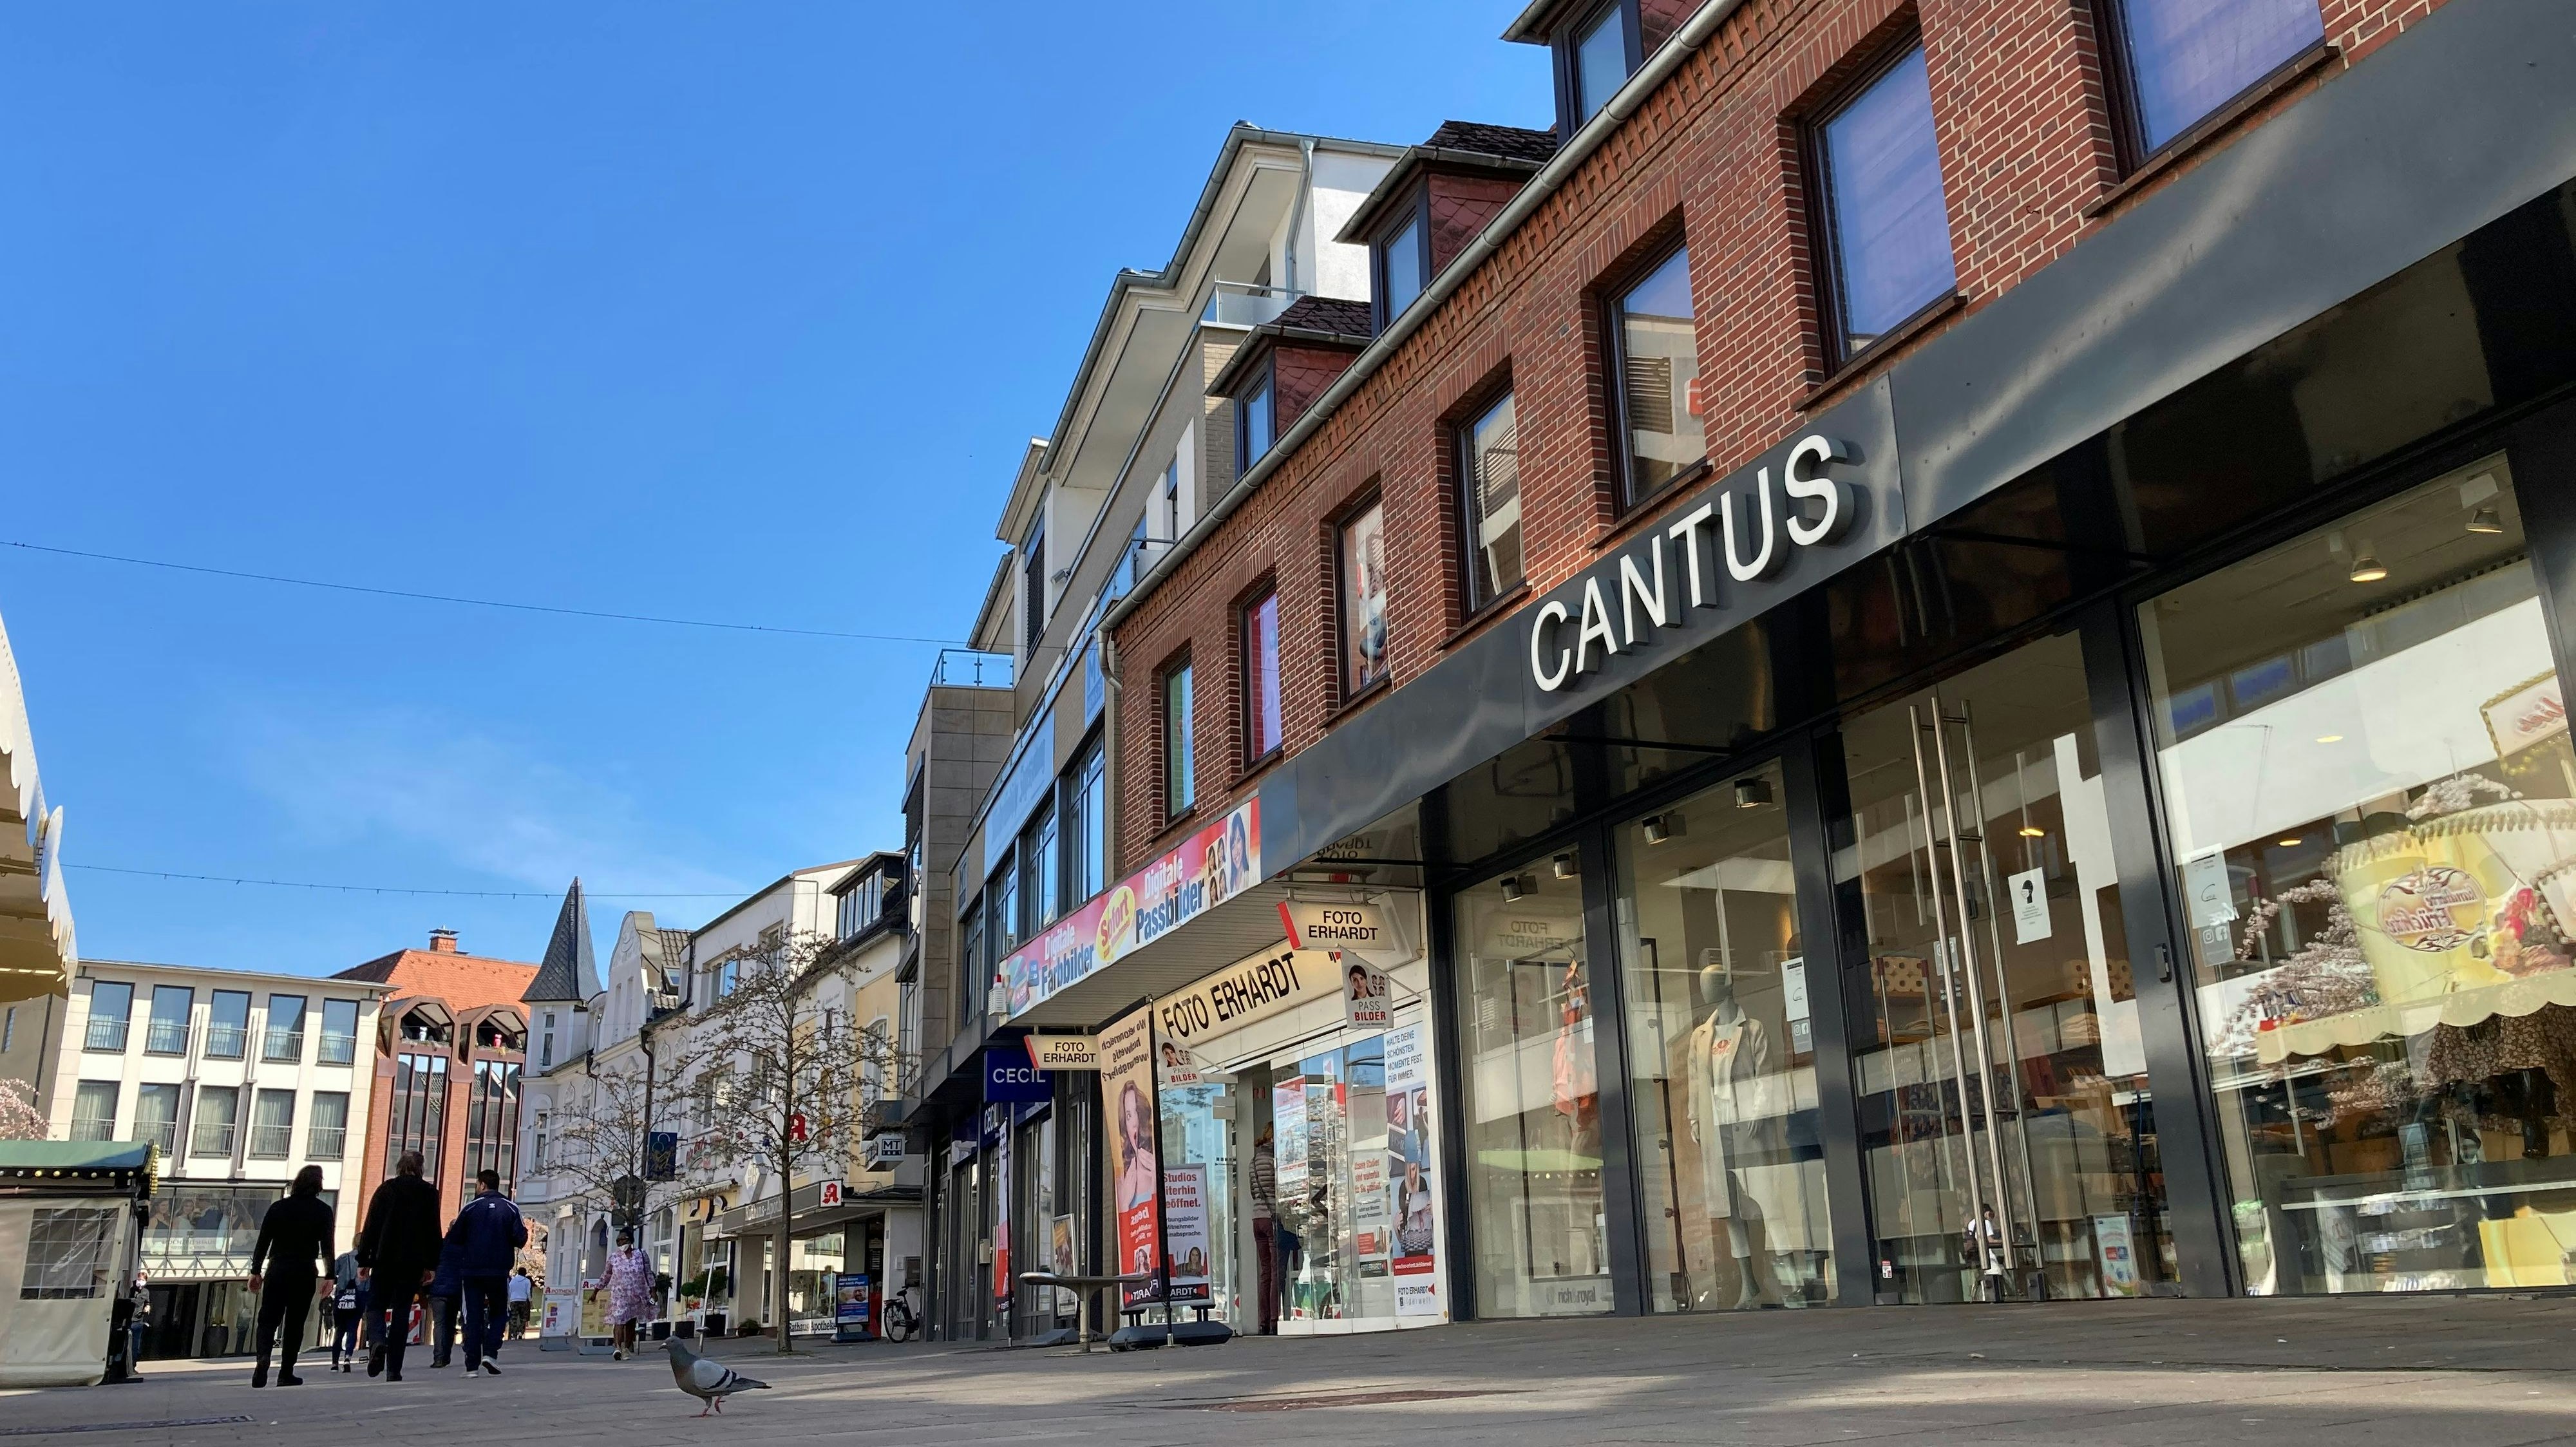 Der Landkreis Cloppenburg und die Stadt Cloppenburg haben am Montagnachmittag gemeinsam das Geschäft "Cantus" kontrolliert. Foto: MT-Archiv